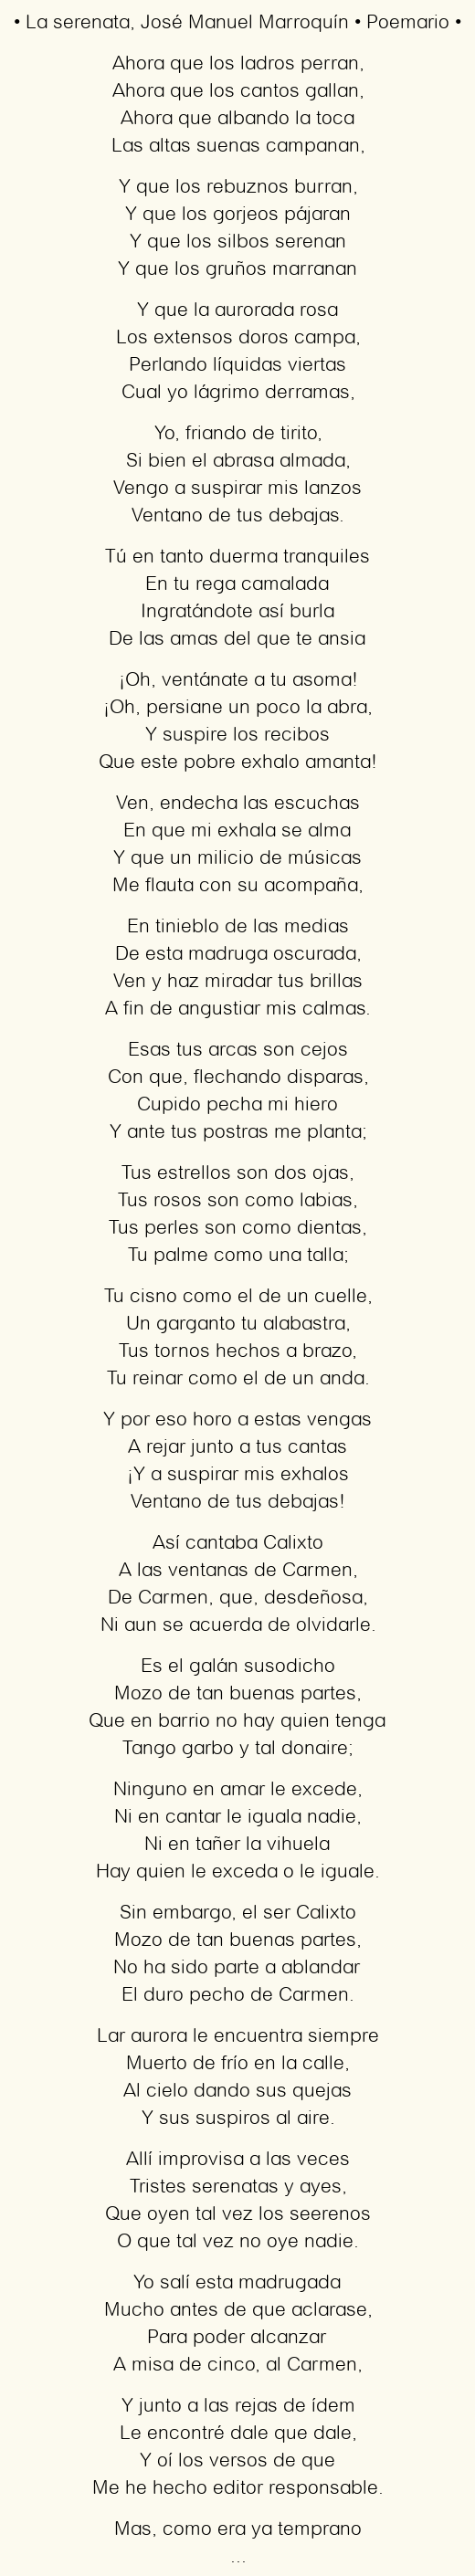 Imagen con el poema La serenata, por José Manuel Marroquín